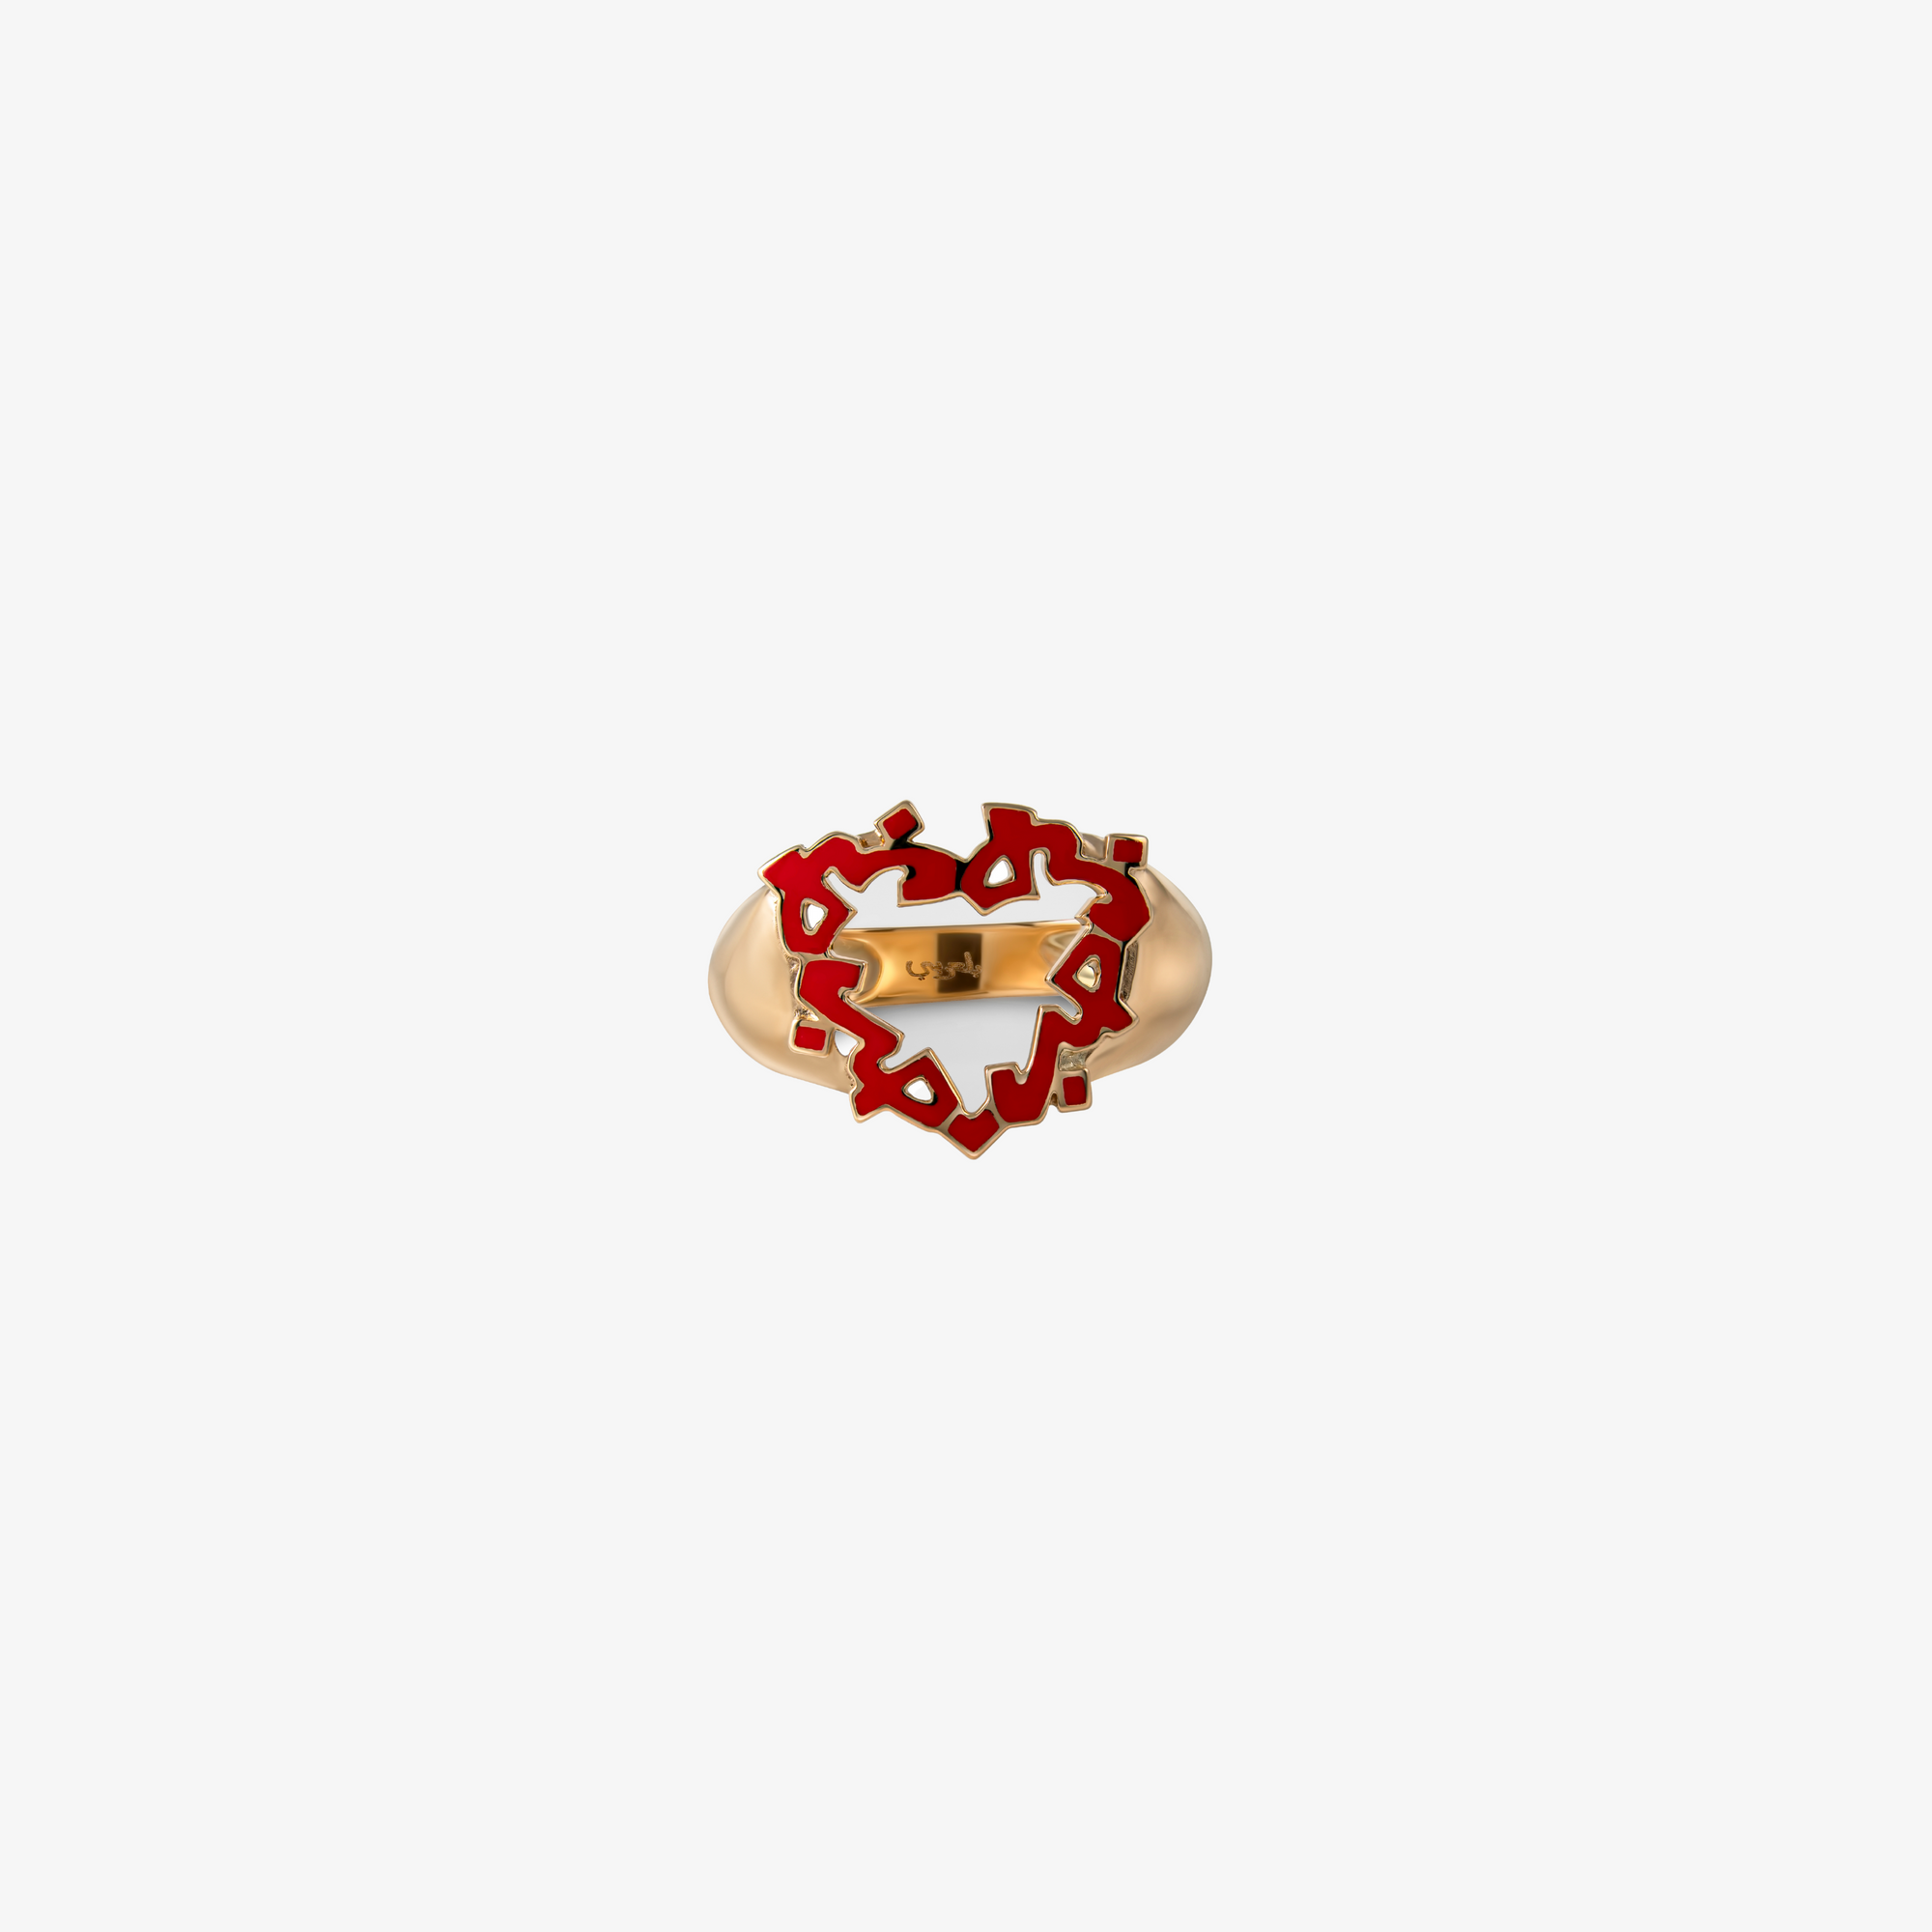 HOBB — 18K Gold Heart Shaped Enamel Signet Ring